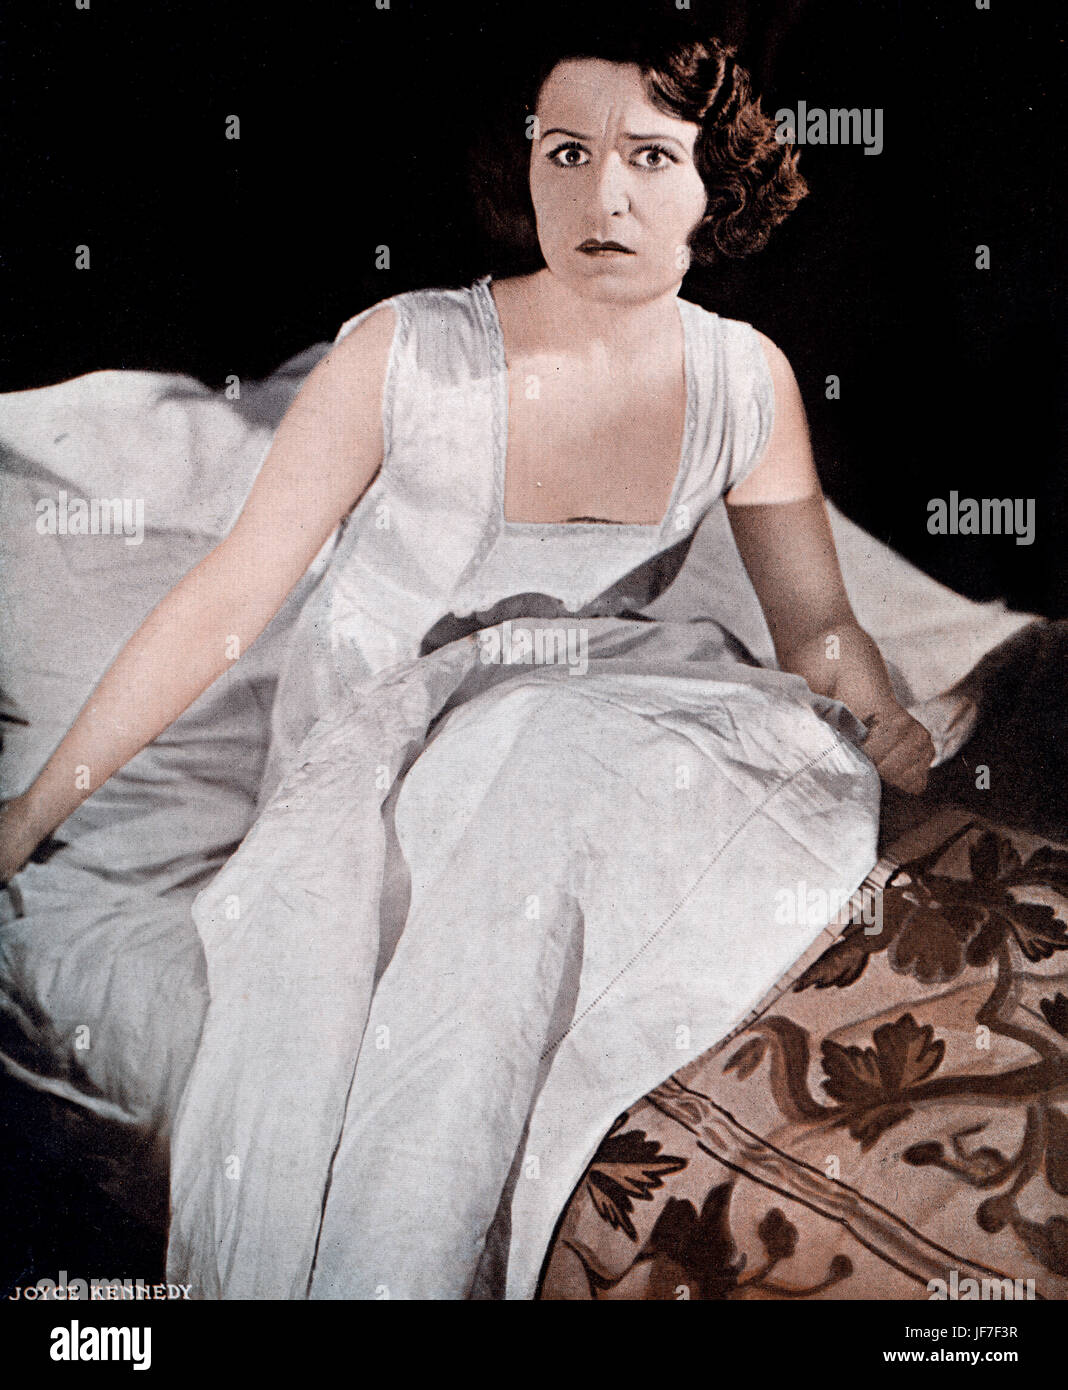 "El caso de la señora asustada" por Edgar Joyce Kennedy como Isla. (1898-1943). Producción de Londres Wyndham's Theatre, el 18 de agosto de 1931. Tapa del juego pictórico. Foto de stock